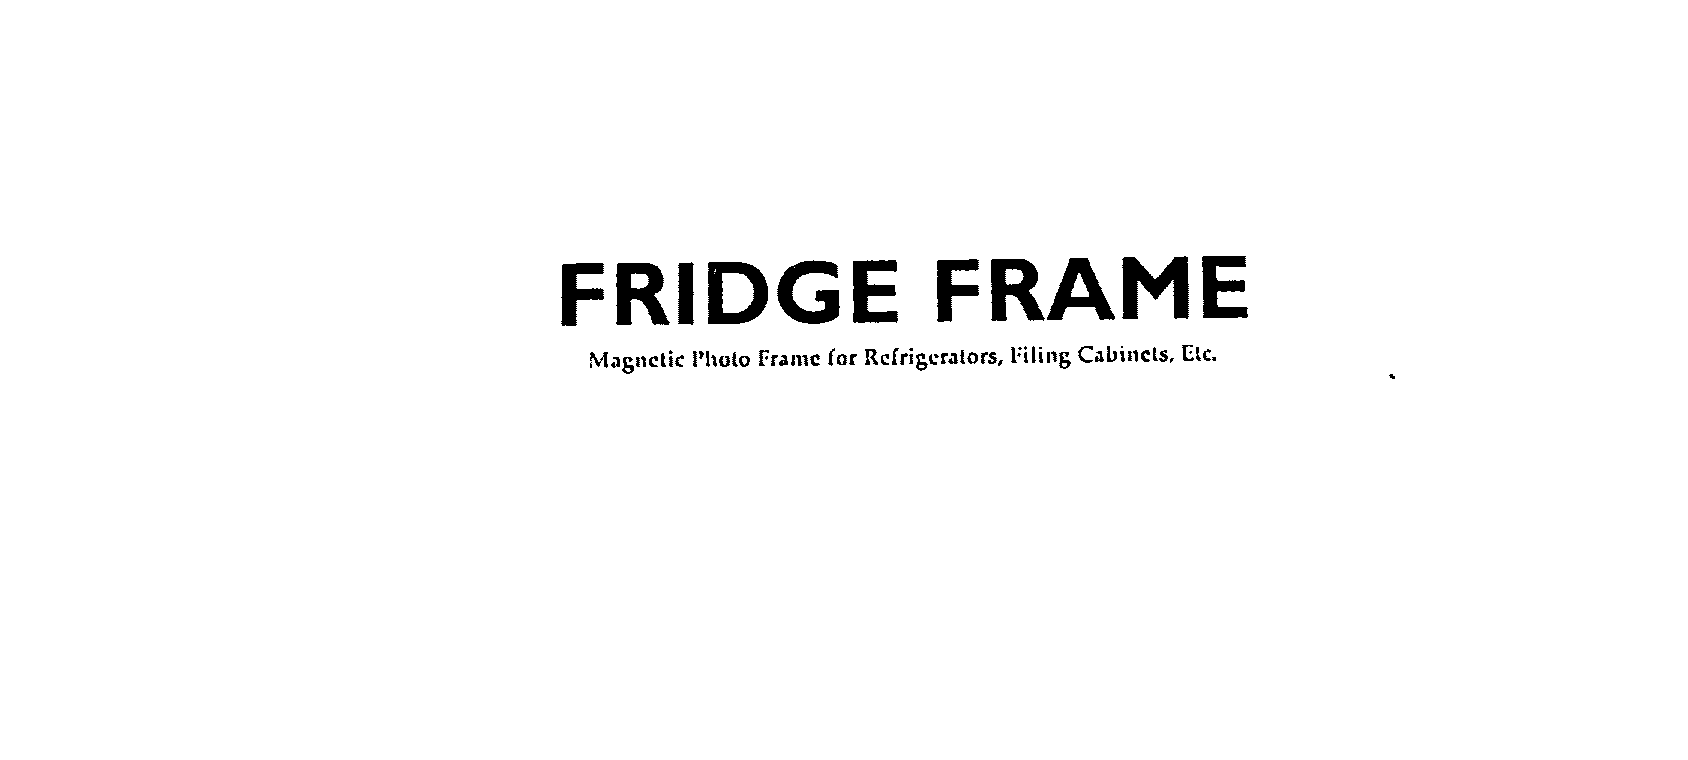  FRIDGE FRAME MAGNETIC PHOTO FRAME FOR REFRIGERATORS, FILING CABINETS, ETC.